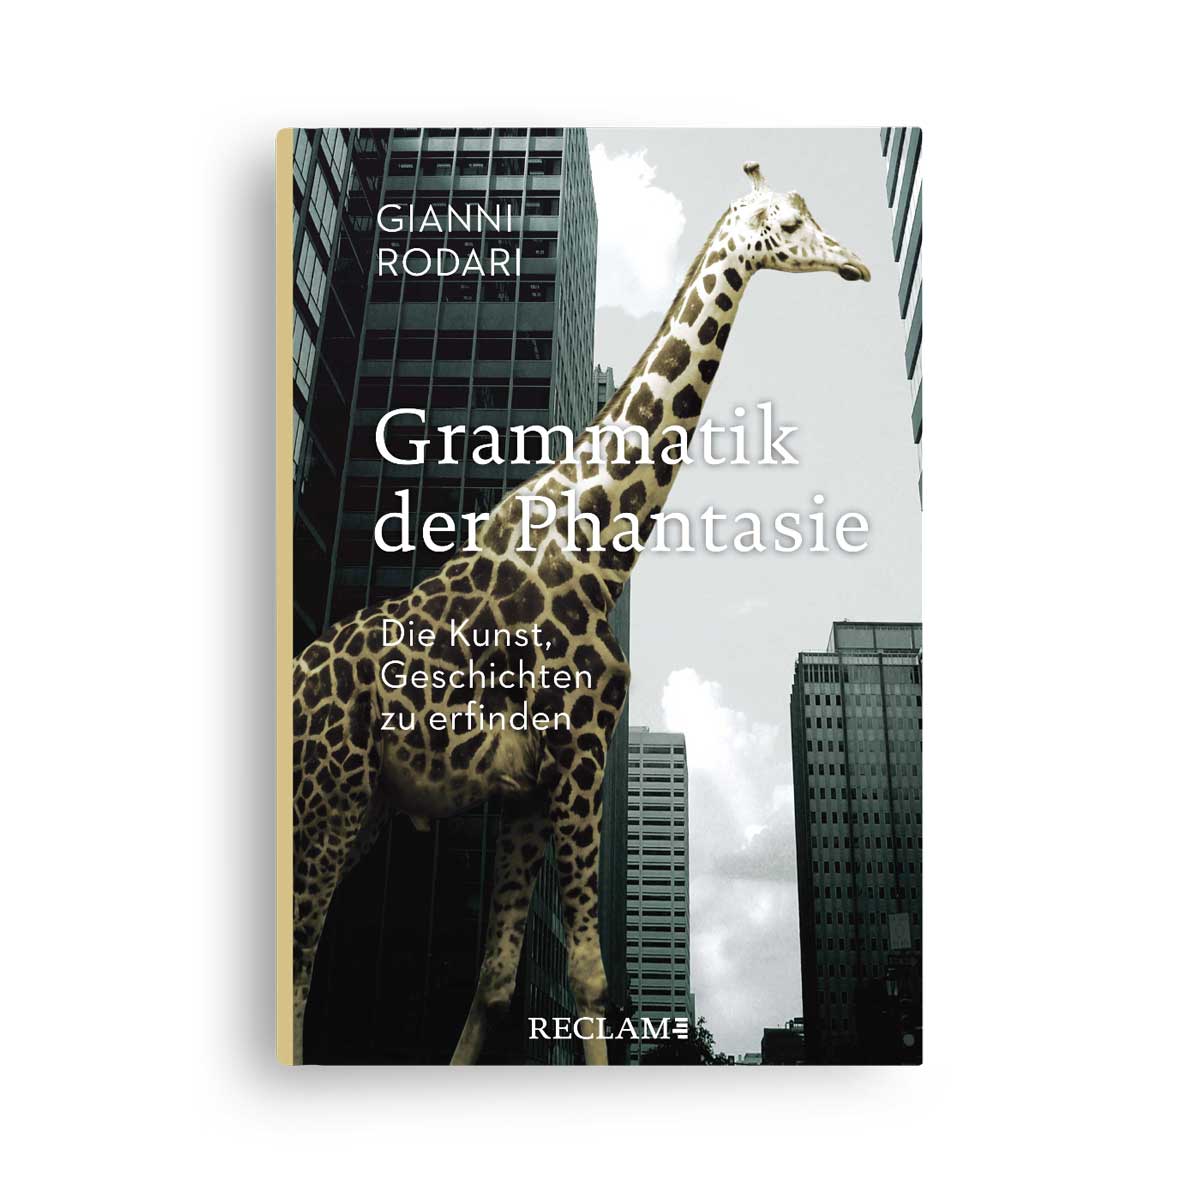 Gianni Rodari: Grammatik der Phantasie